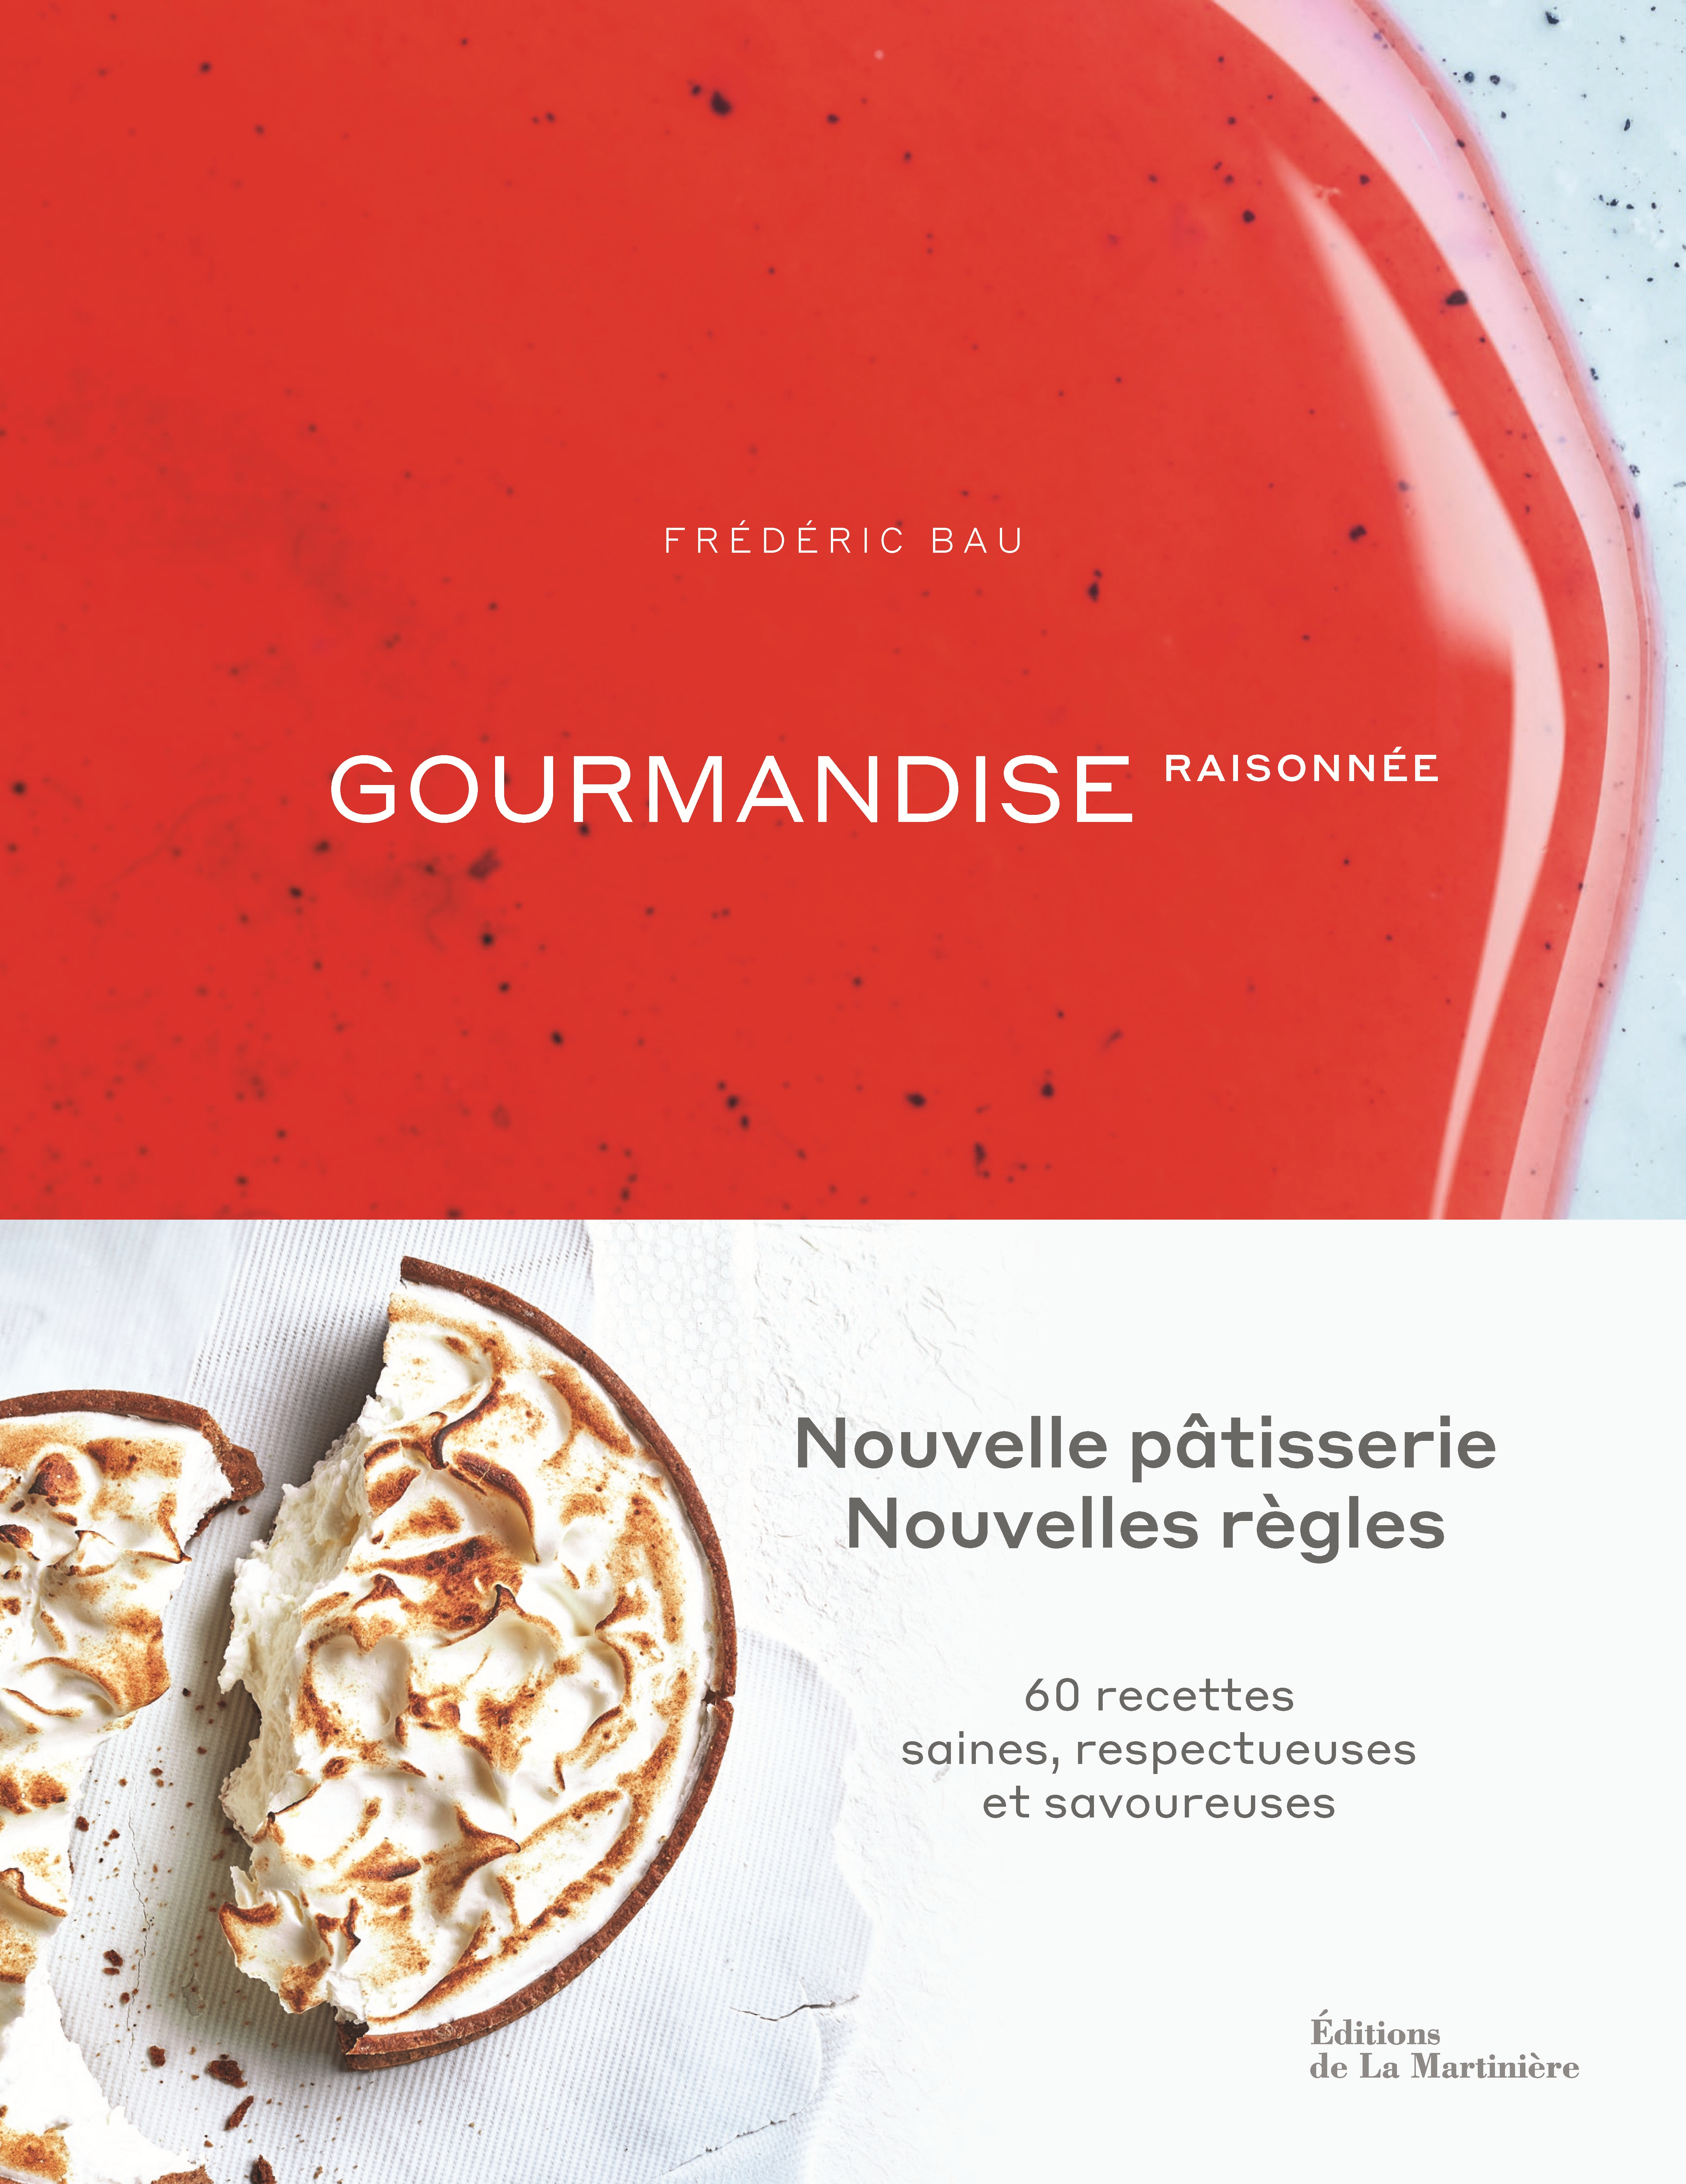 Livre « Gourmandise raisonnée » par Frédéric Bau - Food & Sens